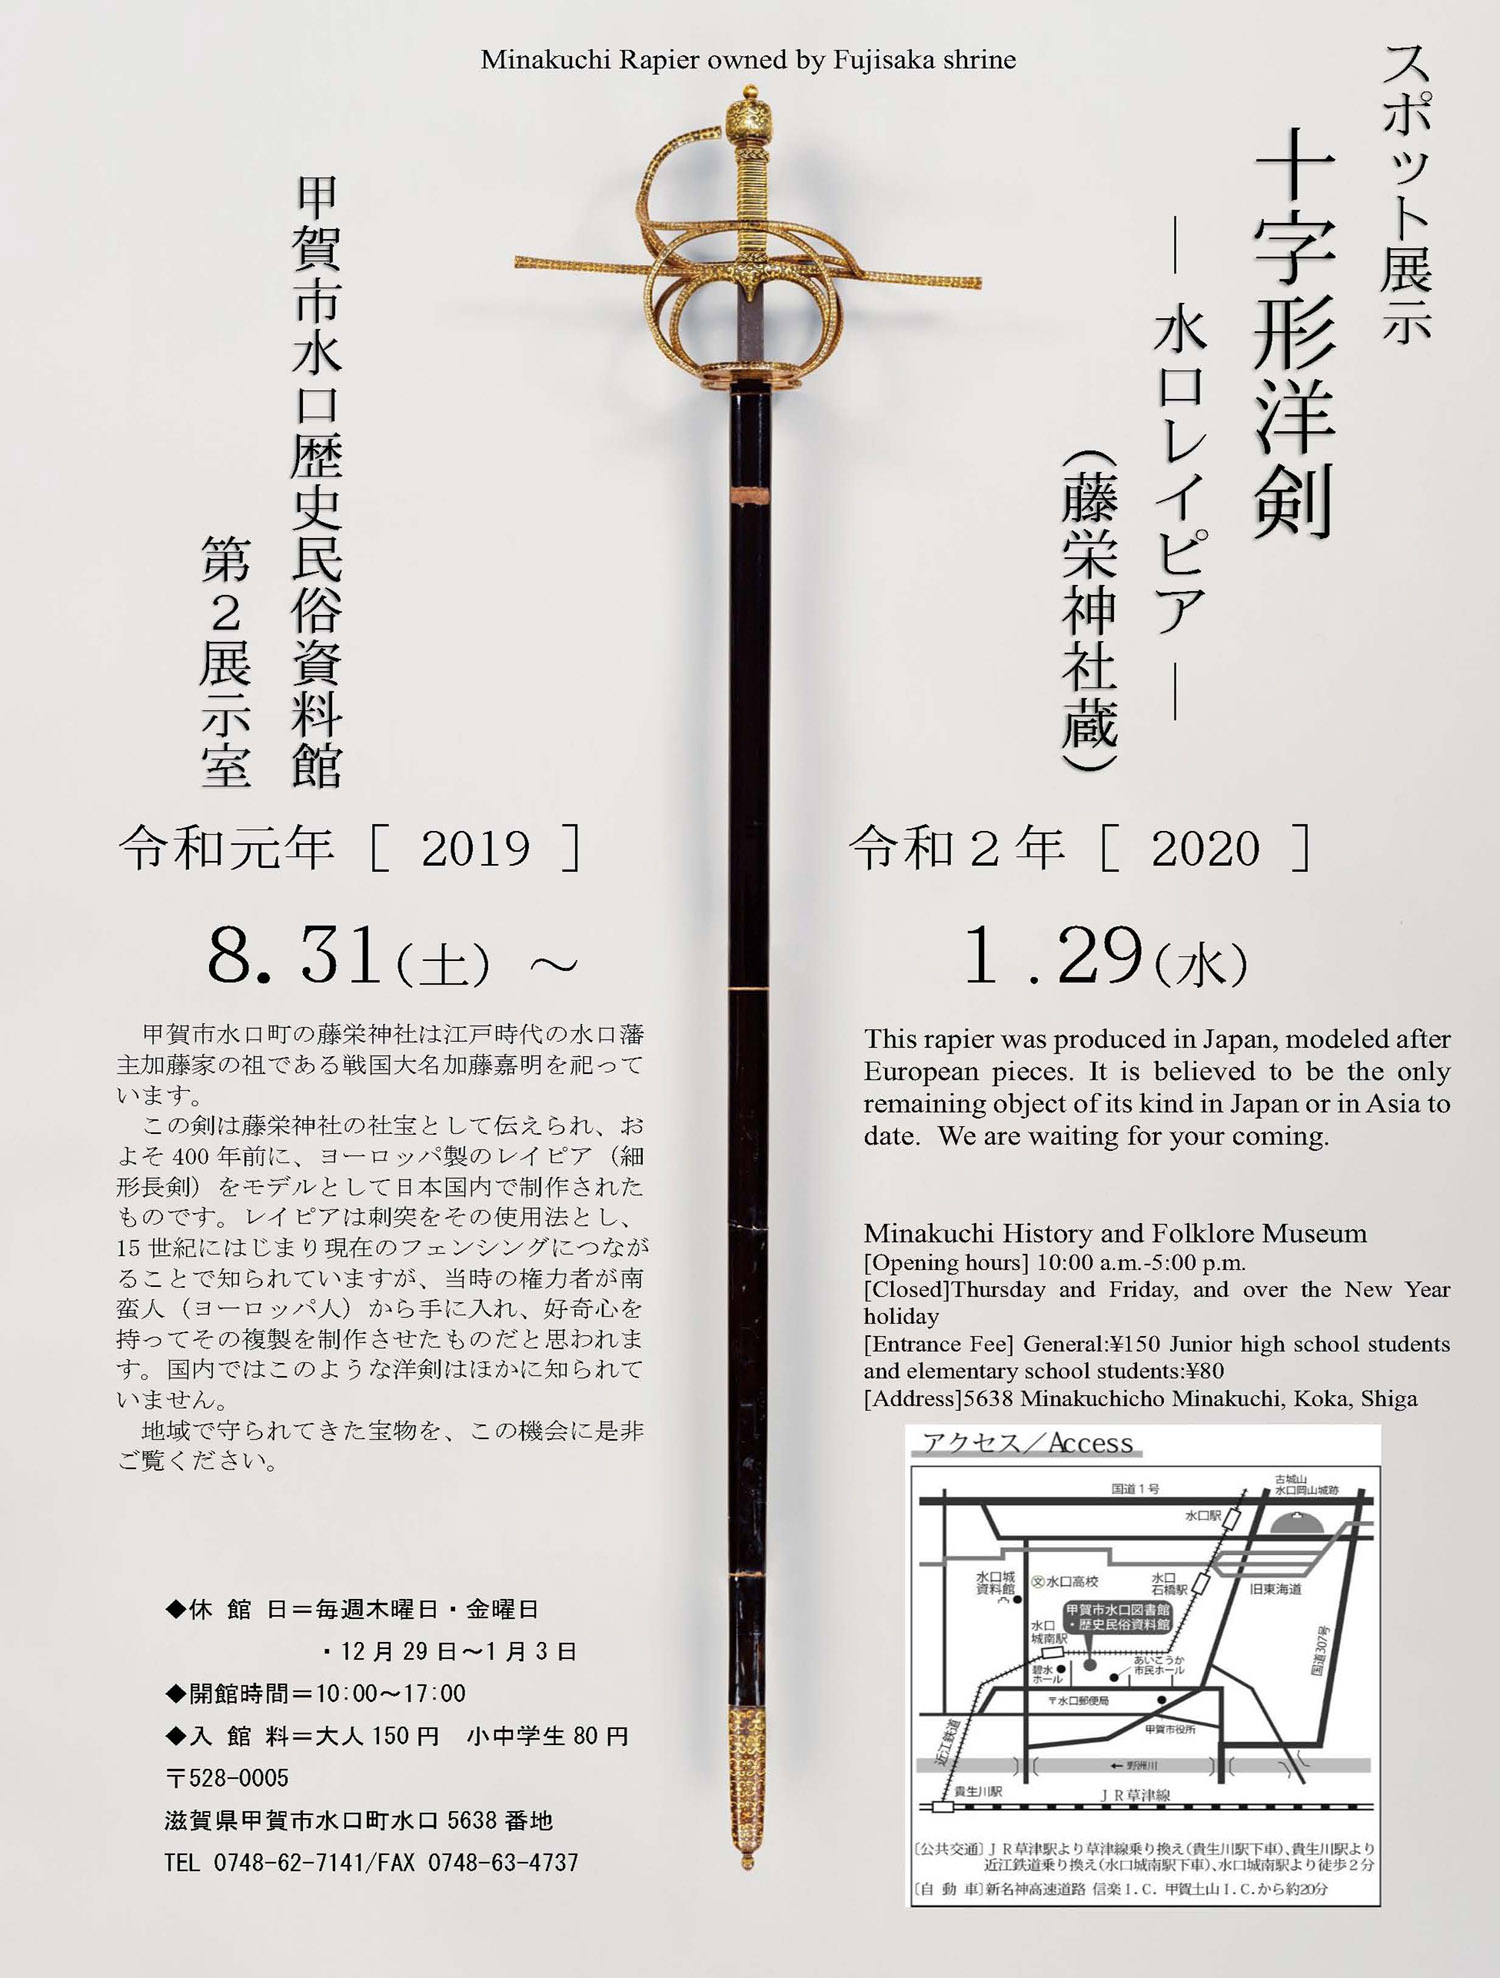 スポット展示 十字形洋剣 水口レイピア スカーレットの舞台地 甲賀市信楽